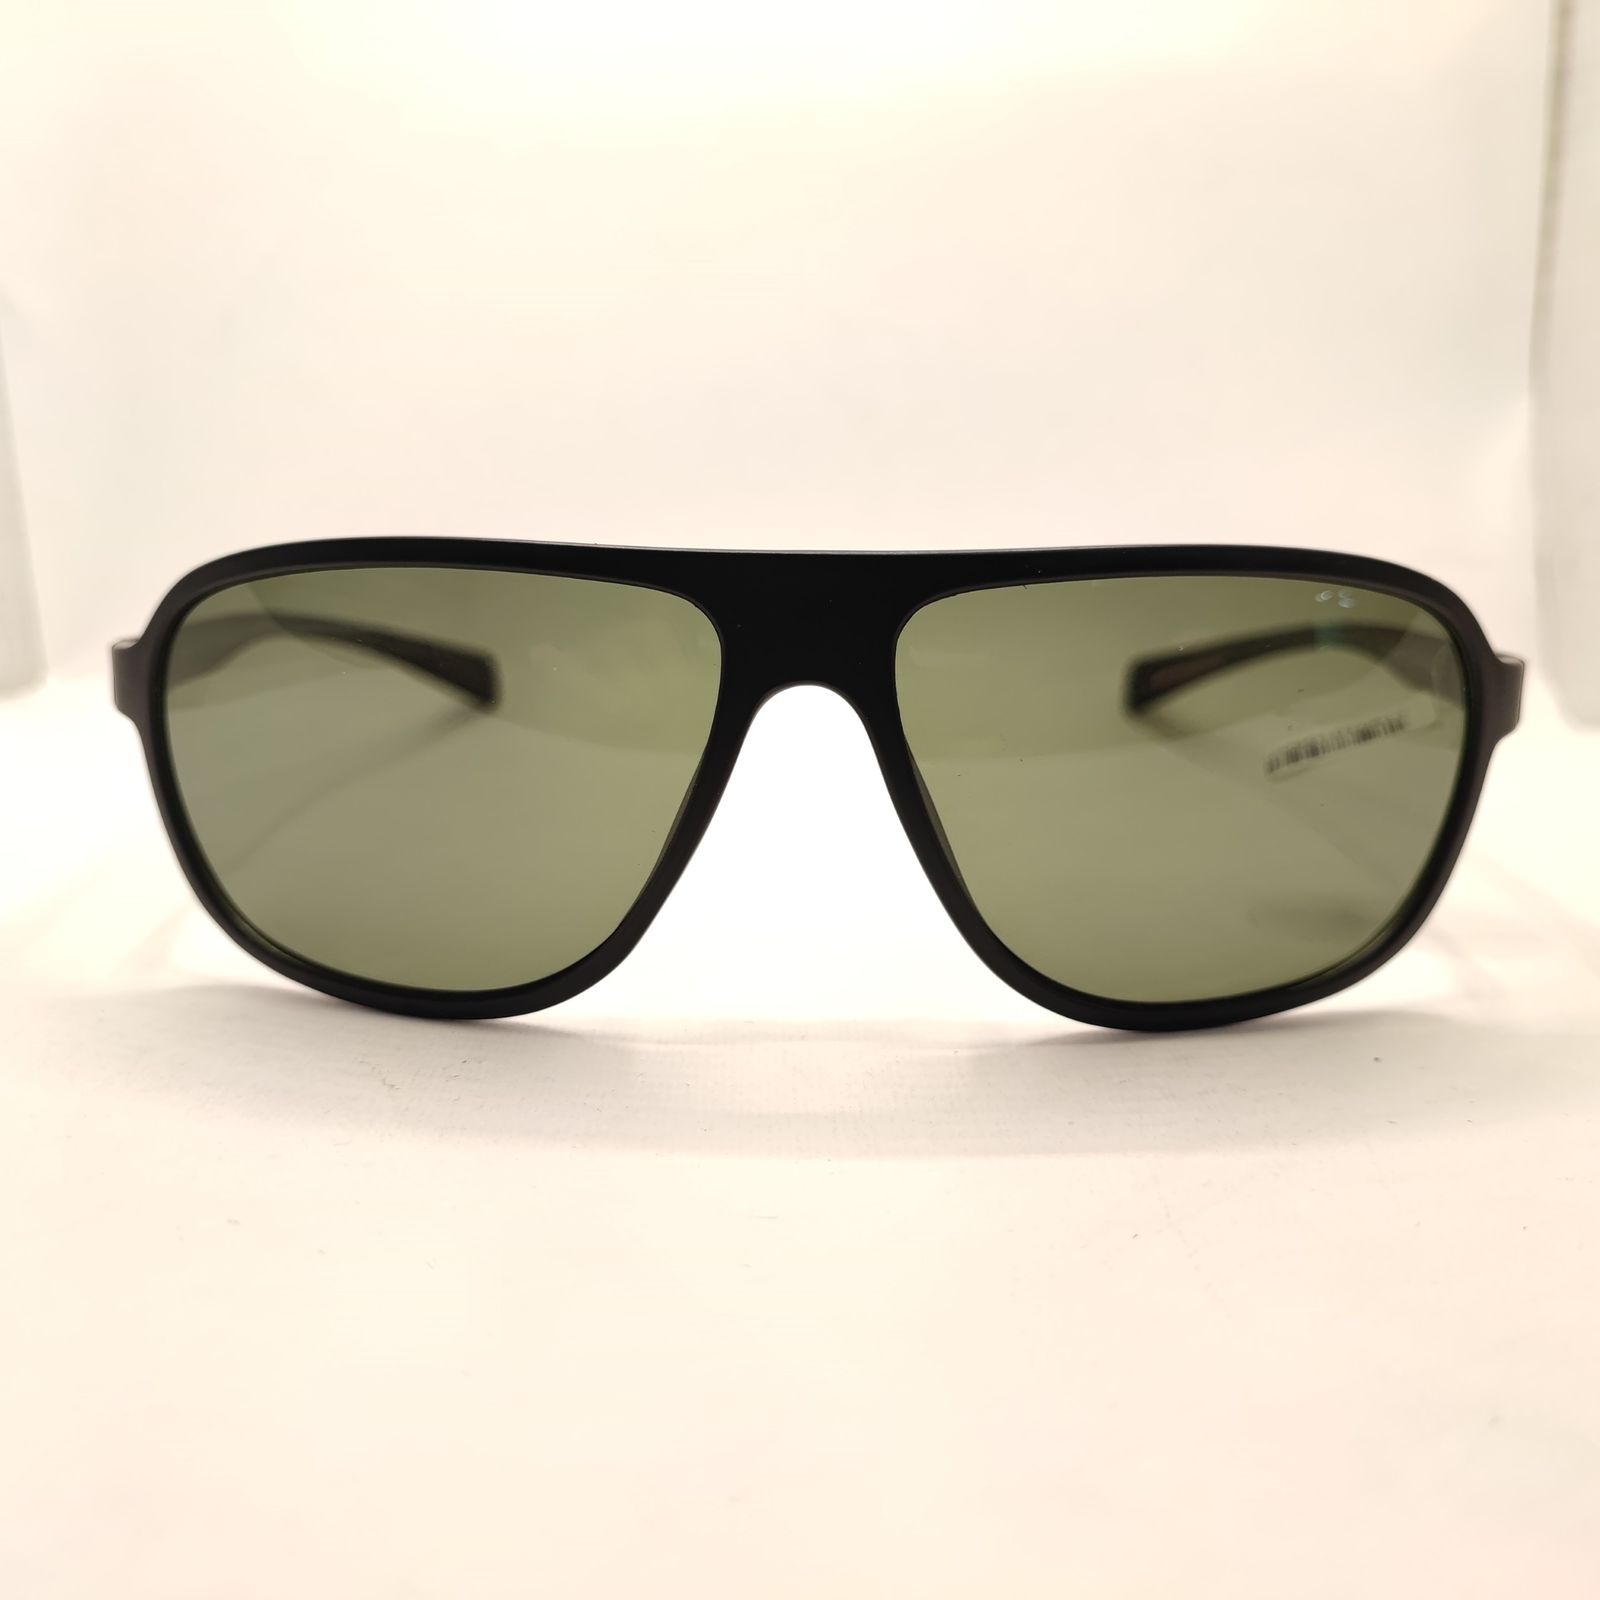 عینک آفتابی کلارک بای تروی کولیزوم مدل S4001 -  - 2